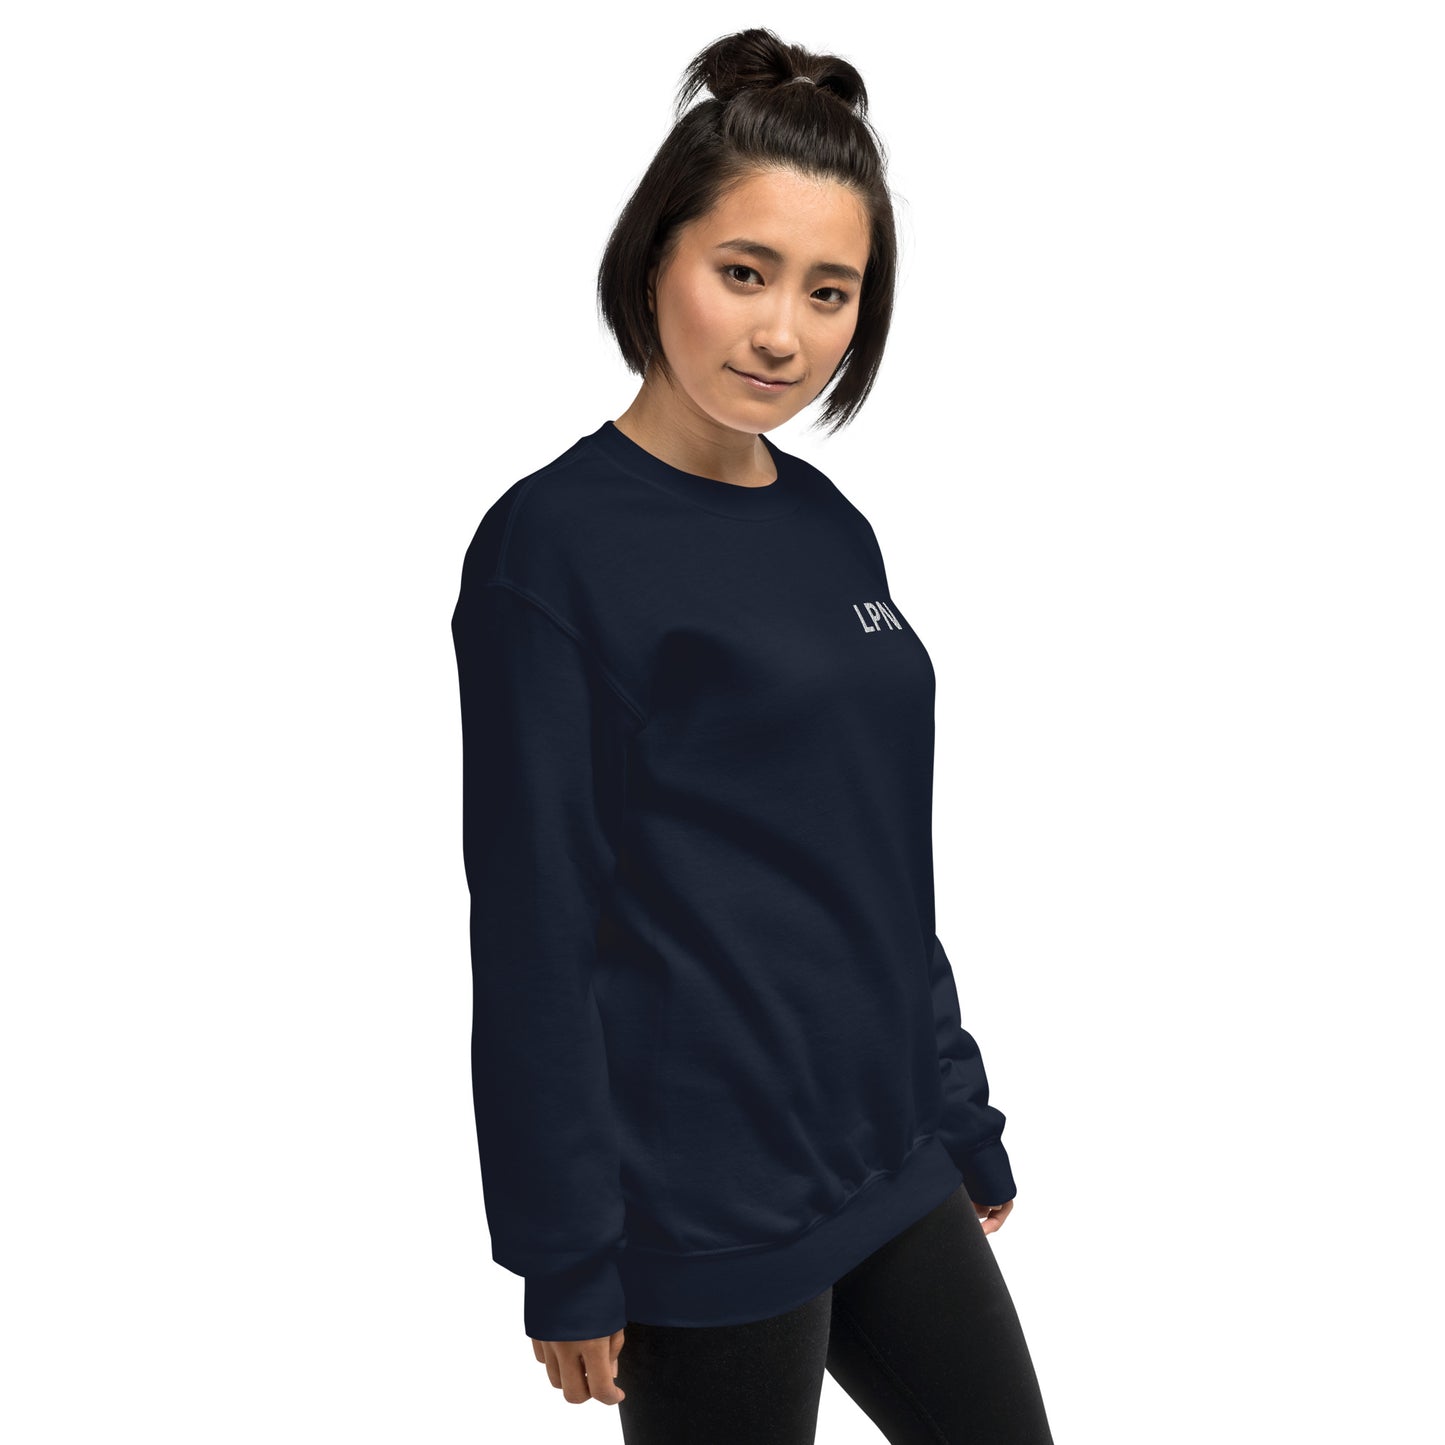 LPN embroidered Unisex Sweatshirt